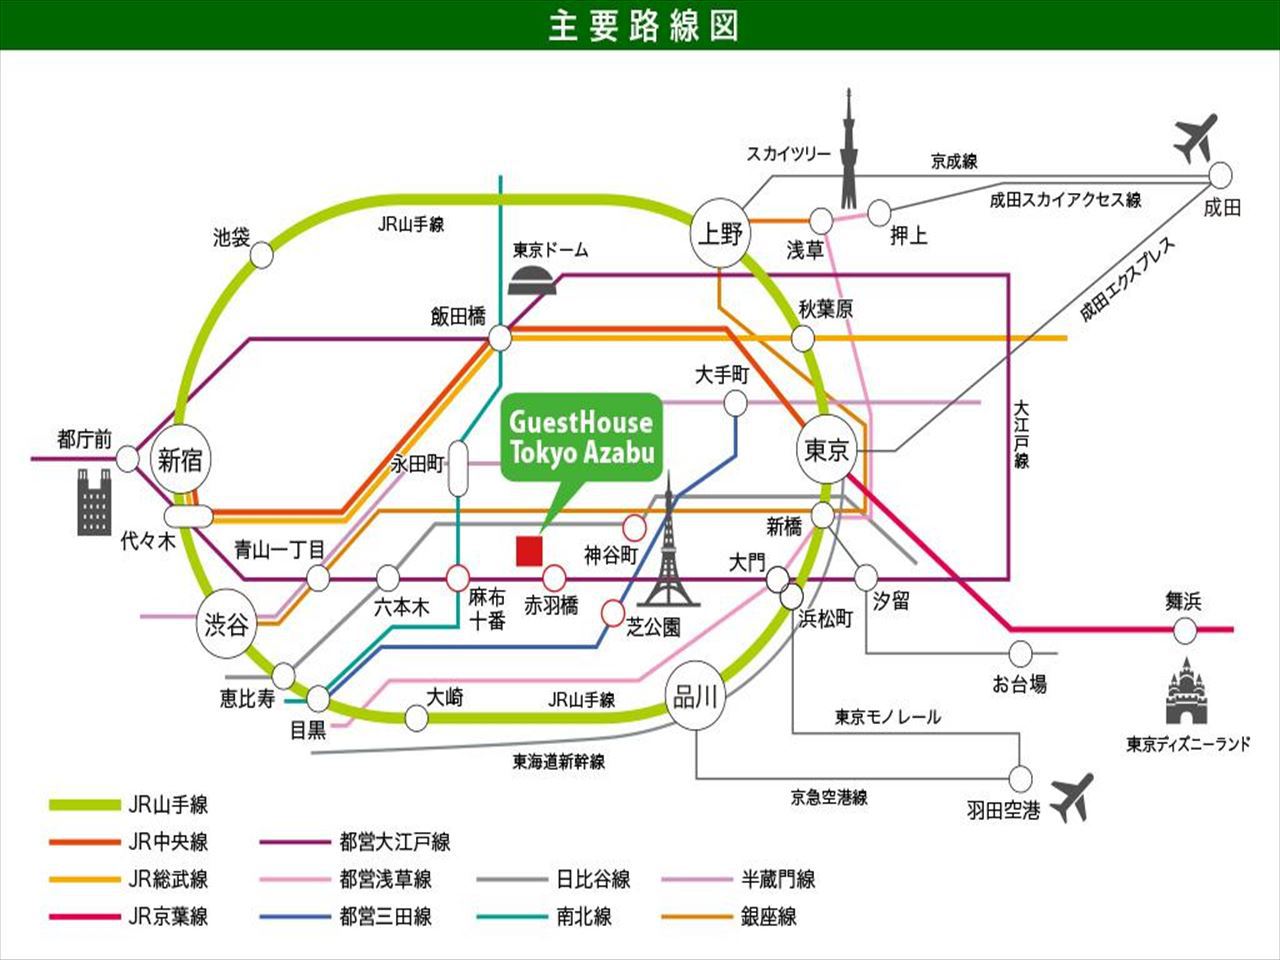 ルートマップ・日本語